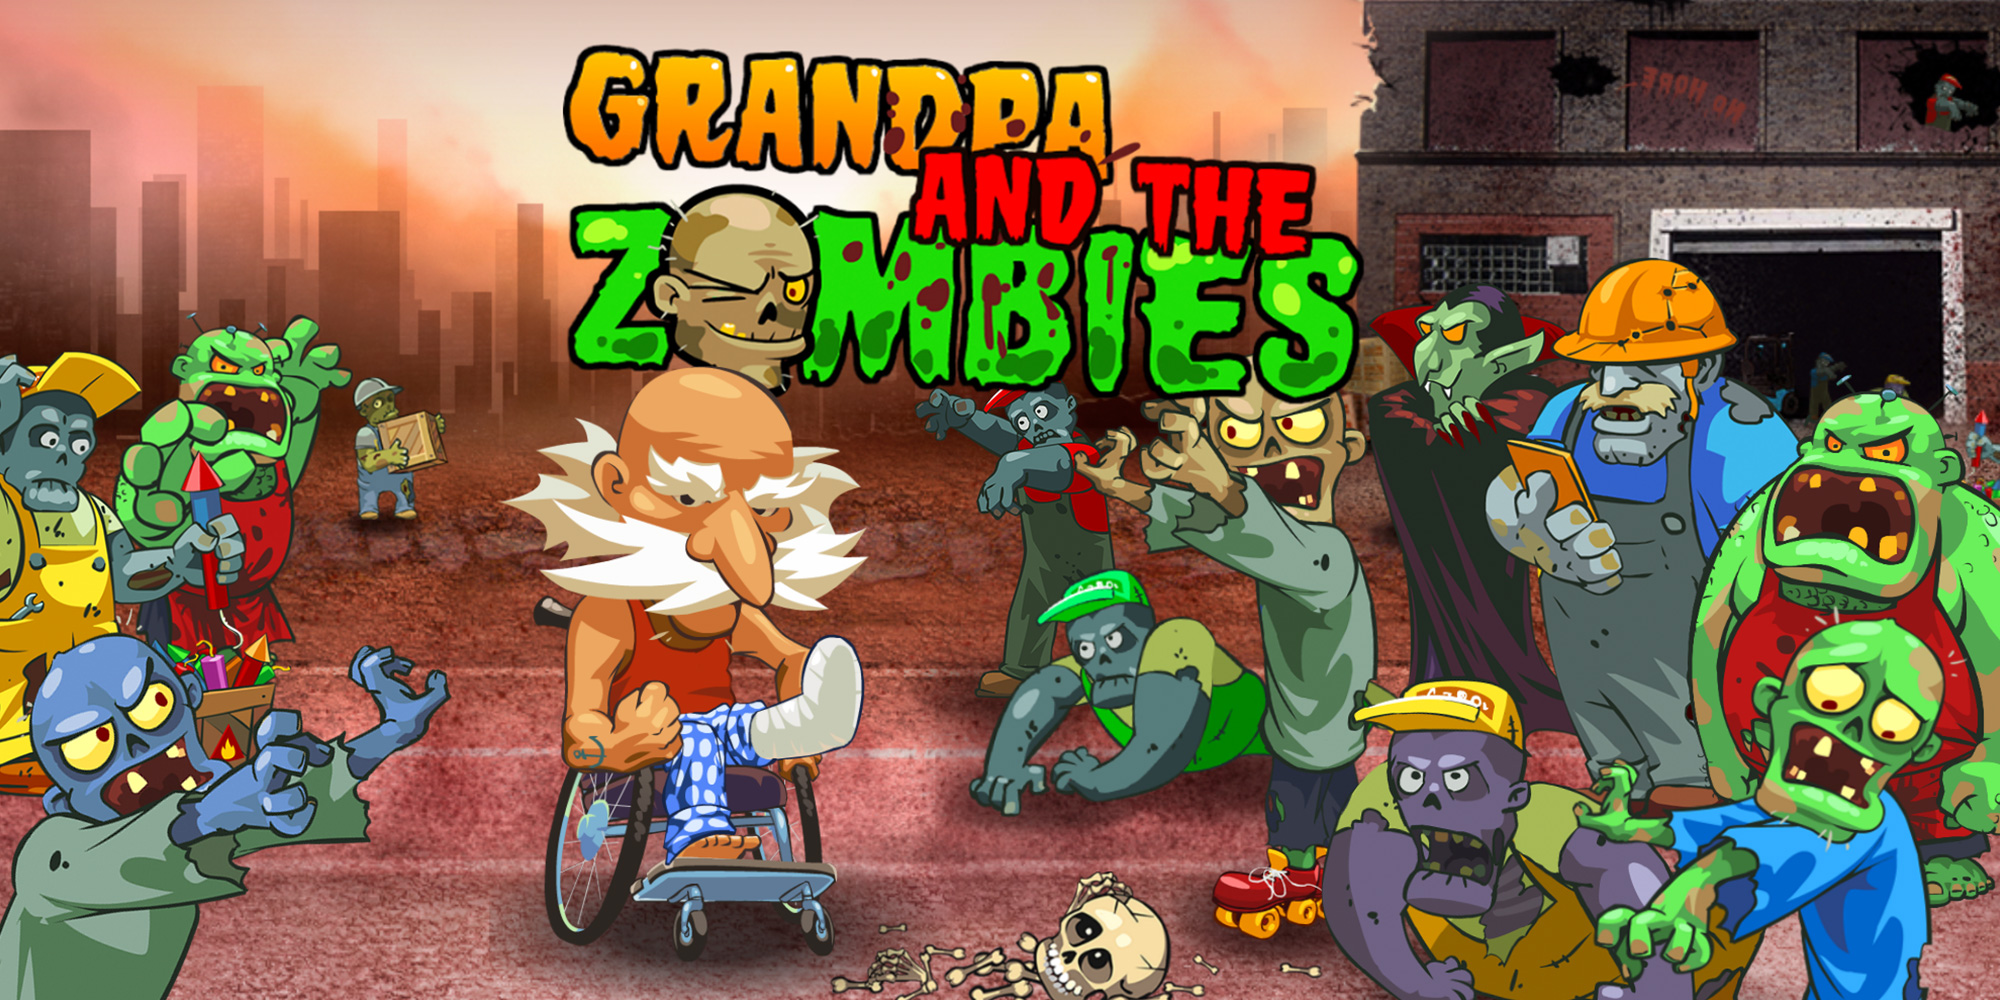 Zombie nintendo switch. Игра за Деда против зомби.